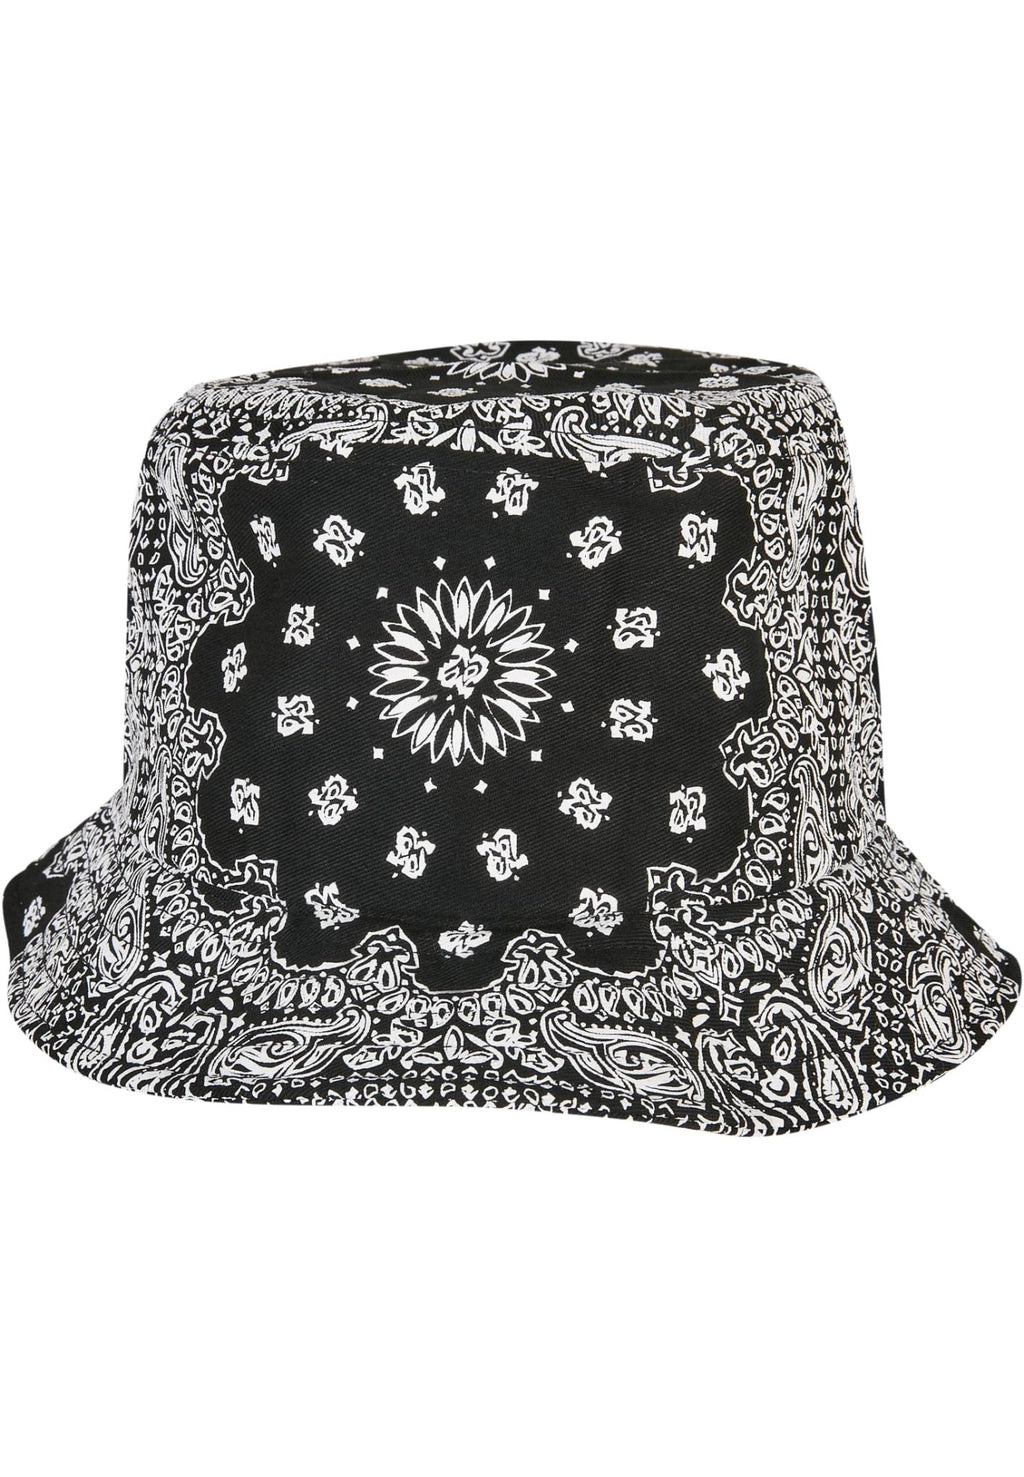 Καπέλο κουβά με σχέδιο μπαντάνα - Μαύρο